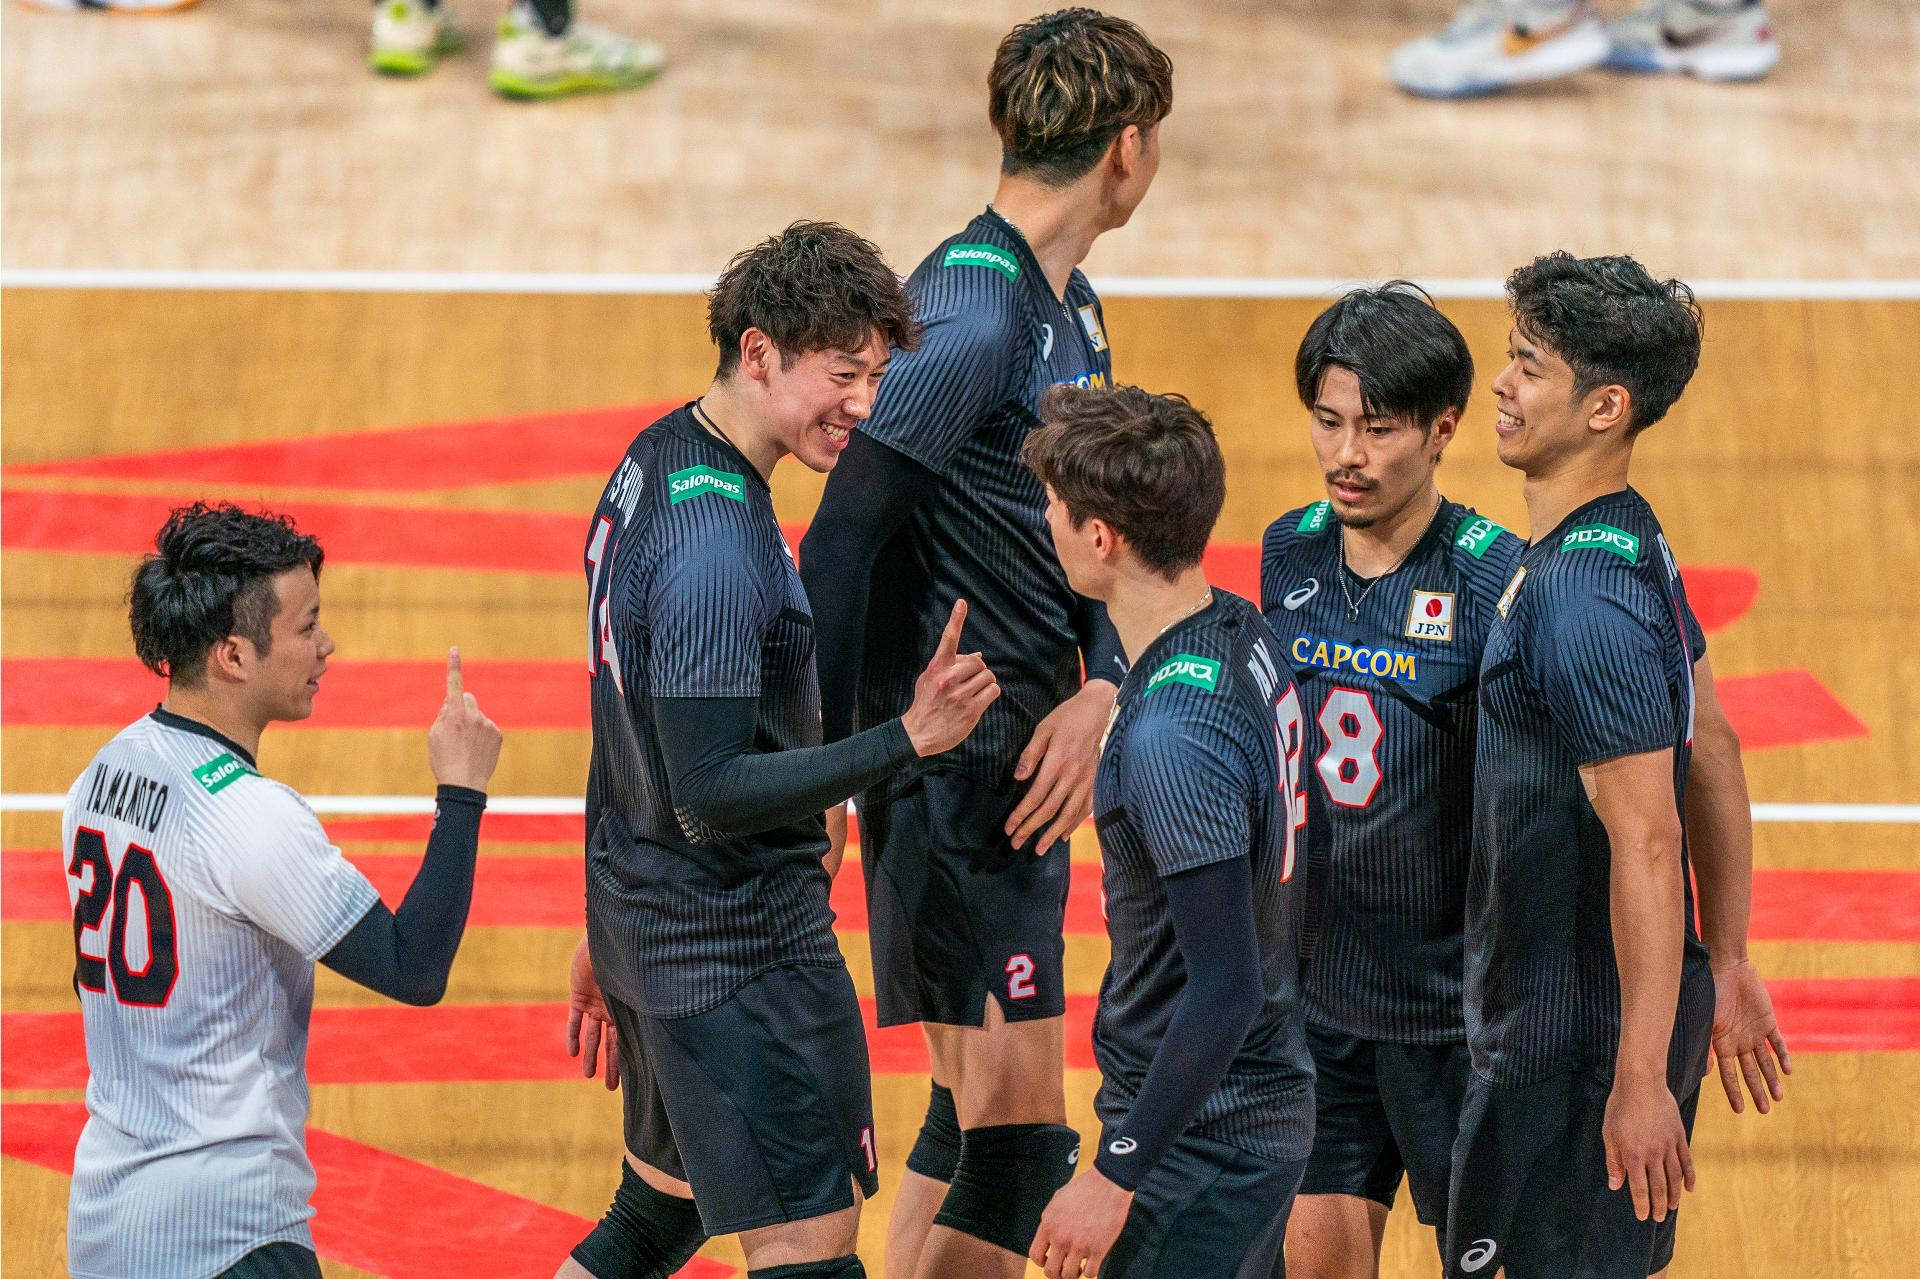 Vôlei: Como foi o jogo de Brasil e Japão na Liga das Nações masculina